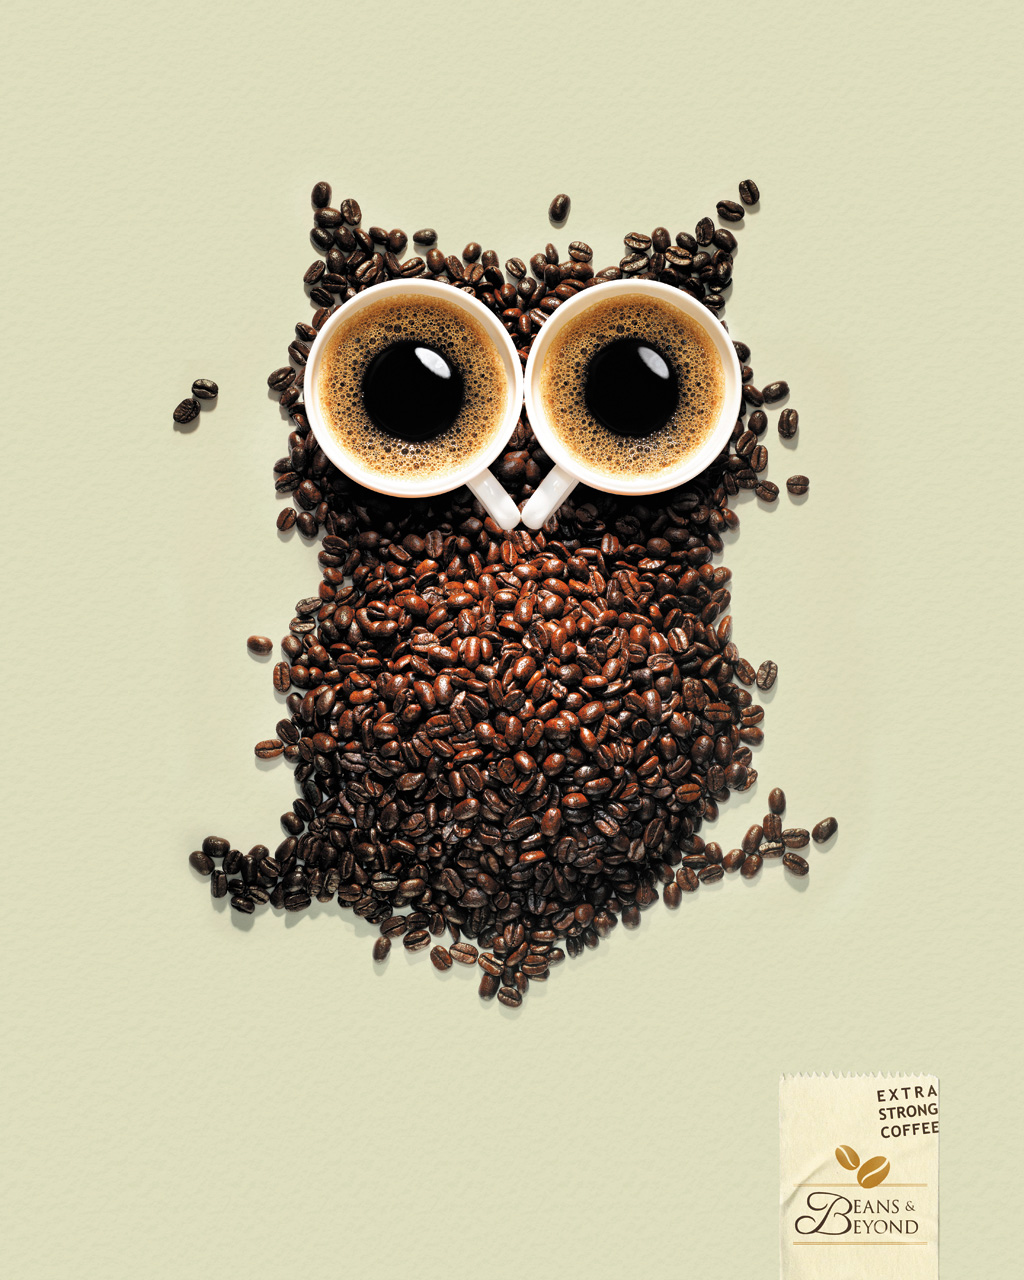 Beans & Beyond咖啡创意广告设计，来源自黄蜂网https://woofeng.cn/